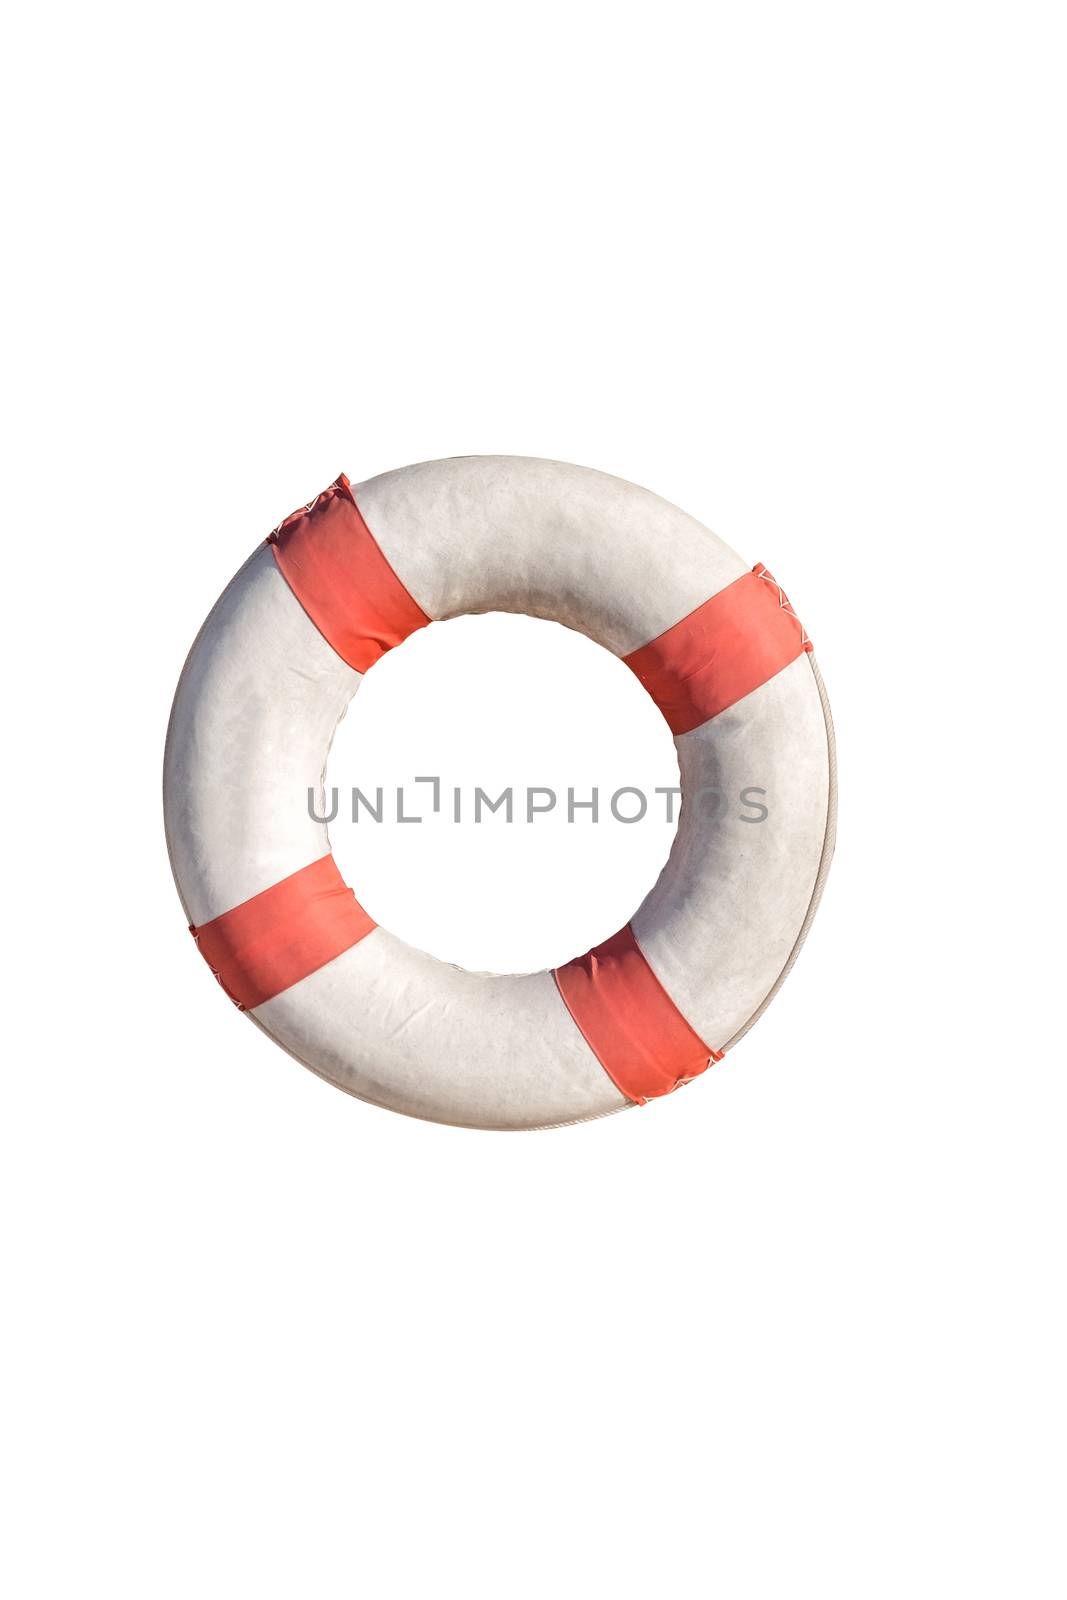 Life buoy on white isolate